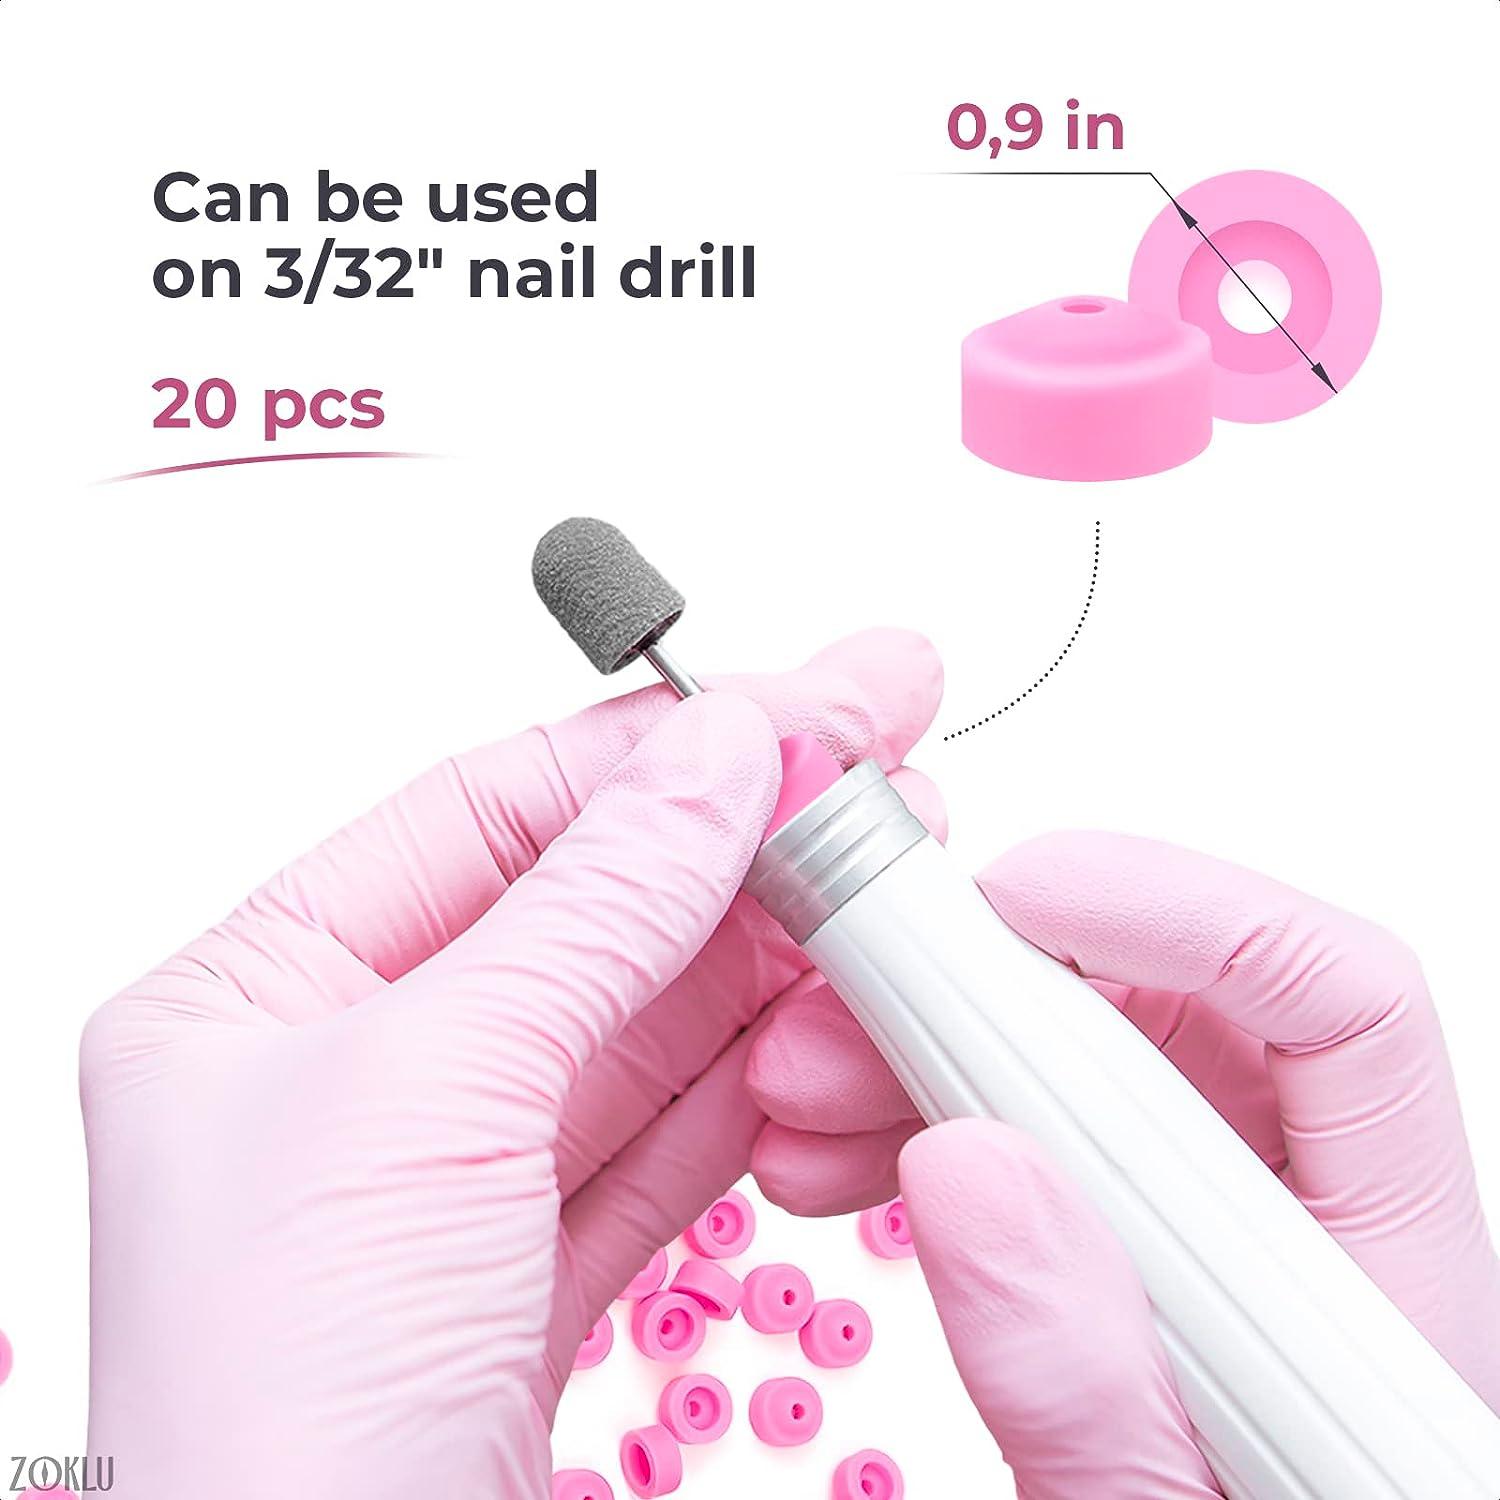 Pink Drill Nail Dust Collector - 20 pcs Professional Nail Drill Bits Pink  Nail Tech Supplies Electric Nail Filer Plastic Cap - Nail Art Tools Drill  Dust Collector Dust Stopper Nail Drill Bit Holder